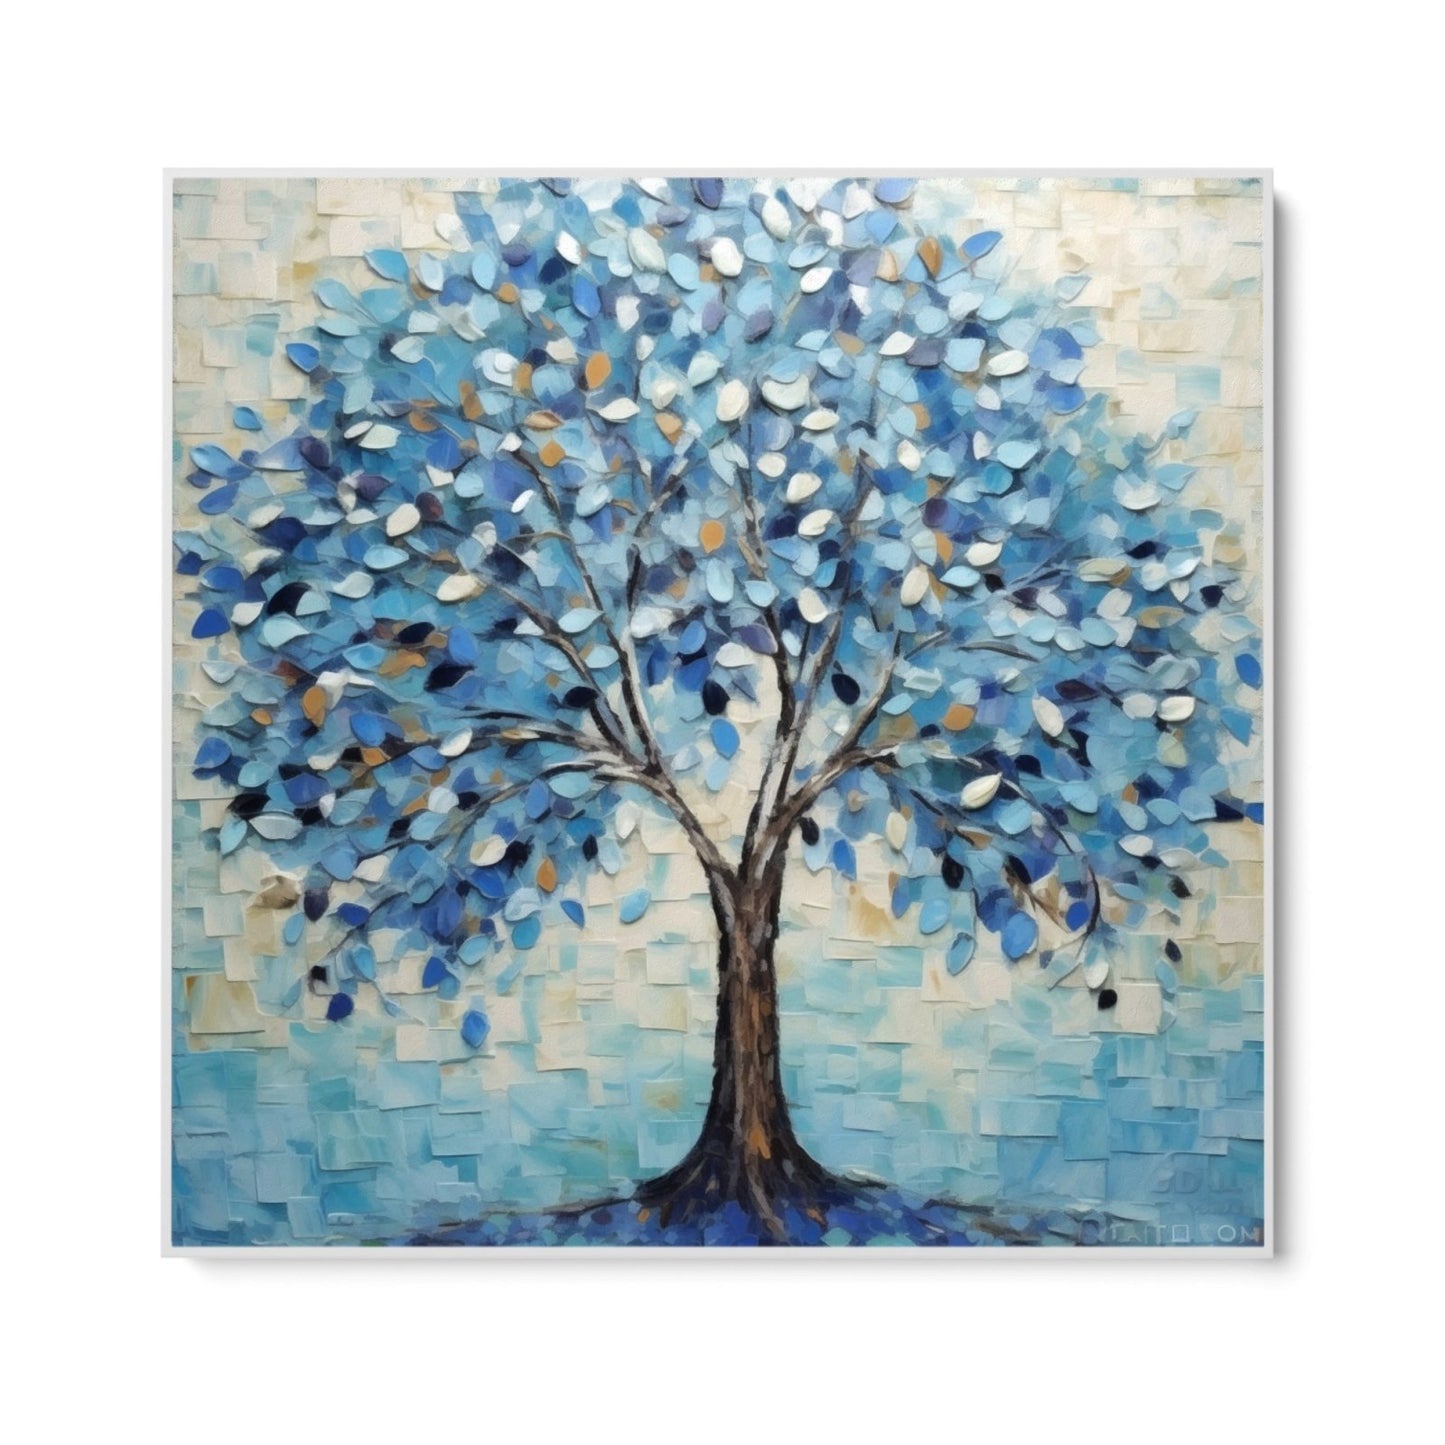 Μπλε δέντρο